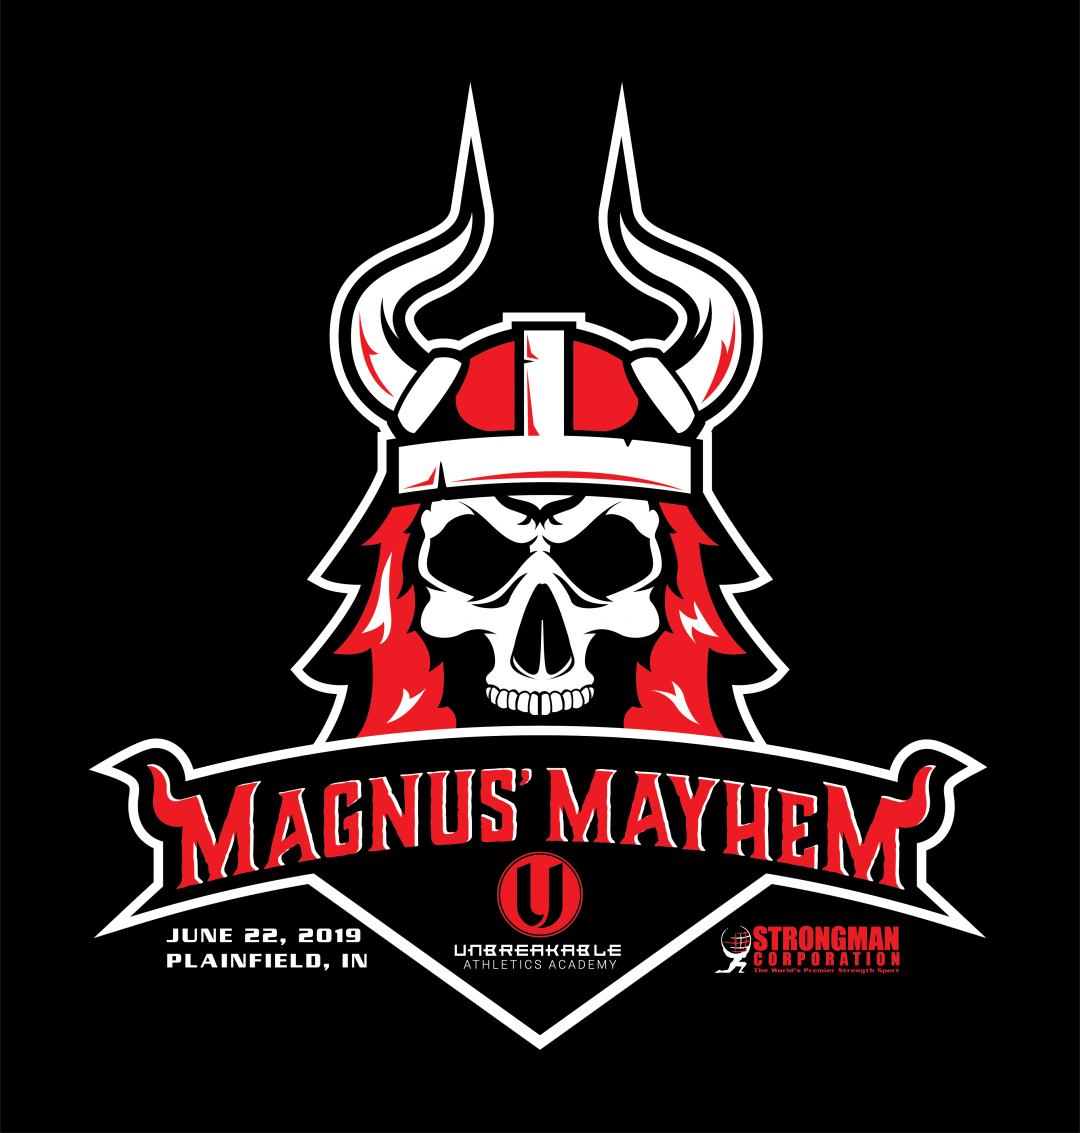 Magnus’ Mayhem